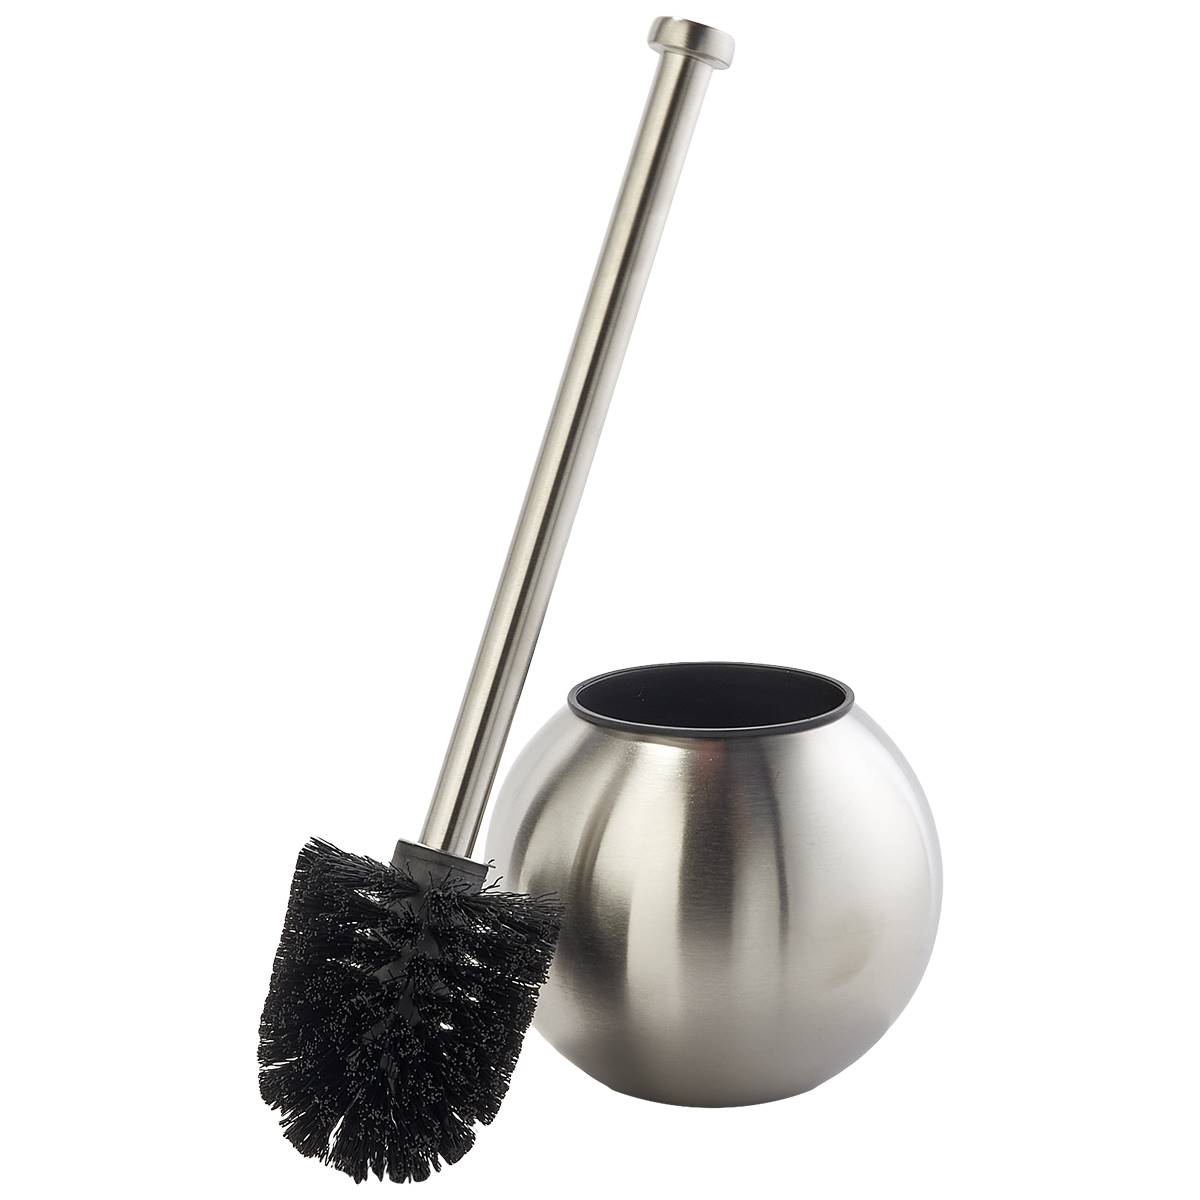 Stainless Steel Globe Toilet Bowl Brush